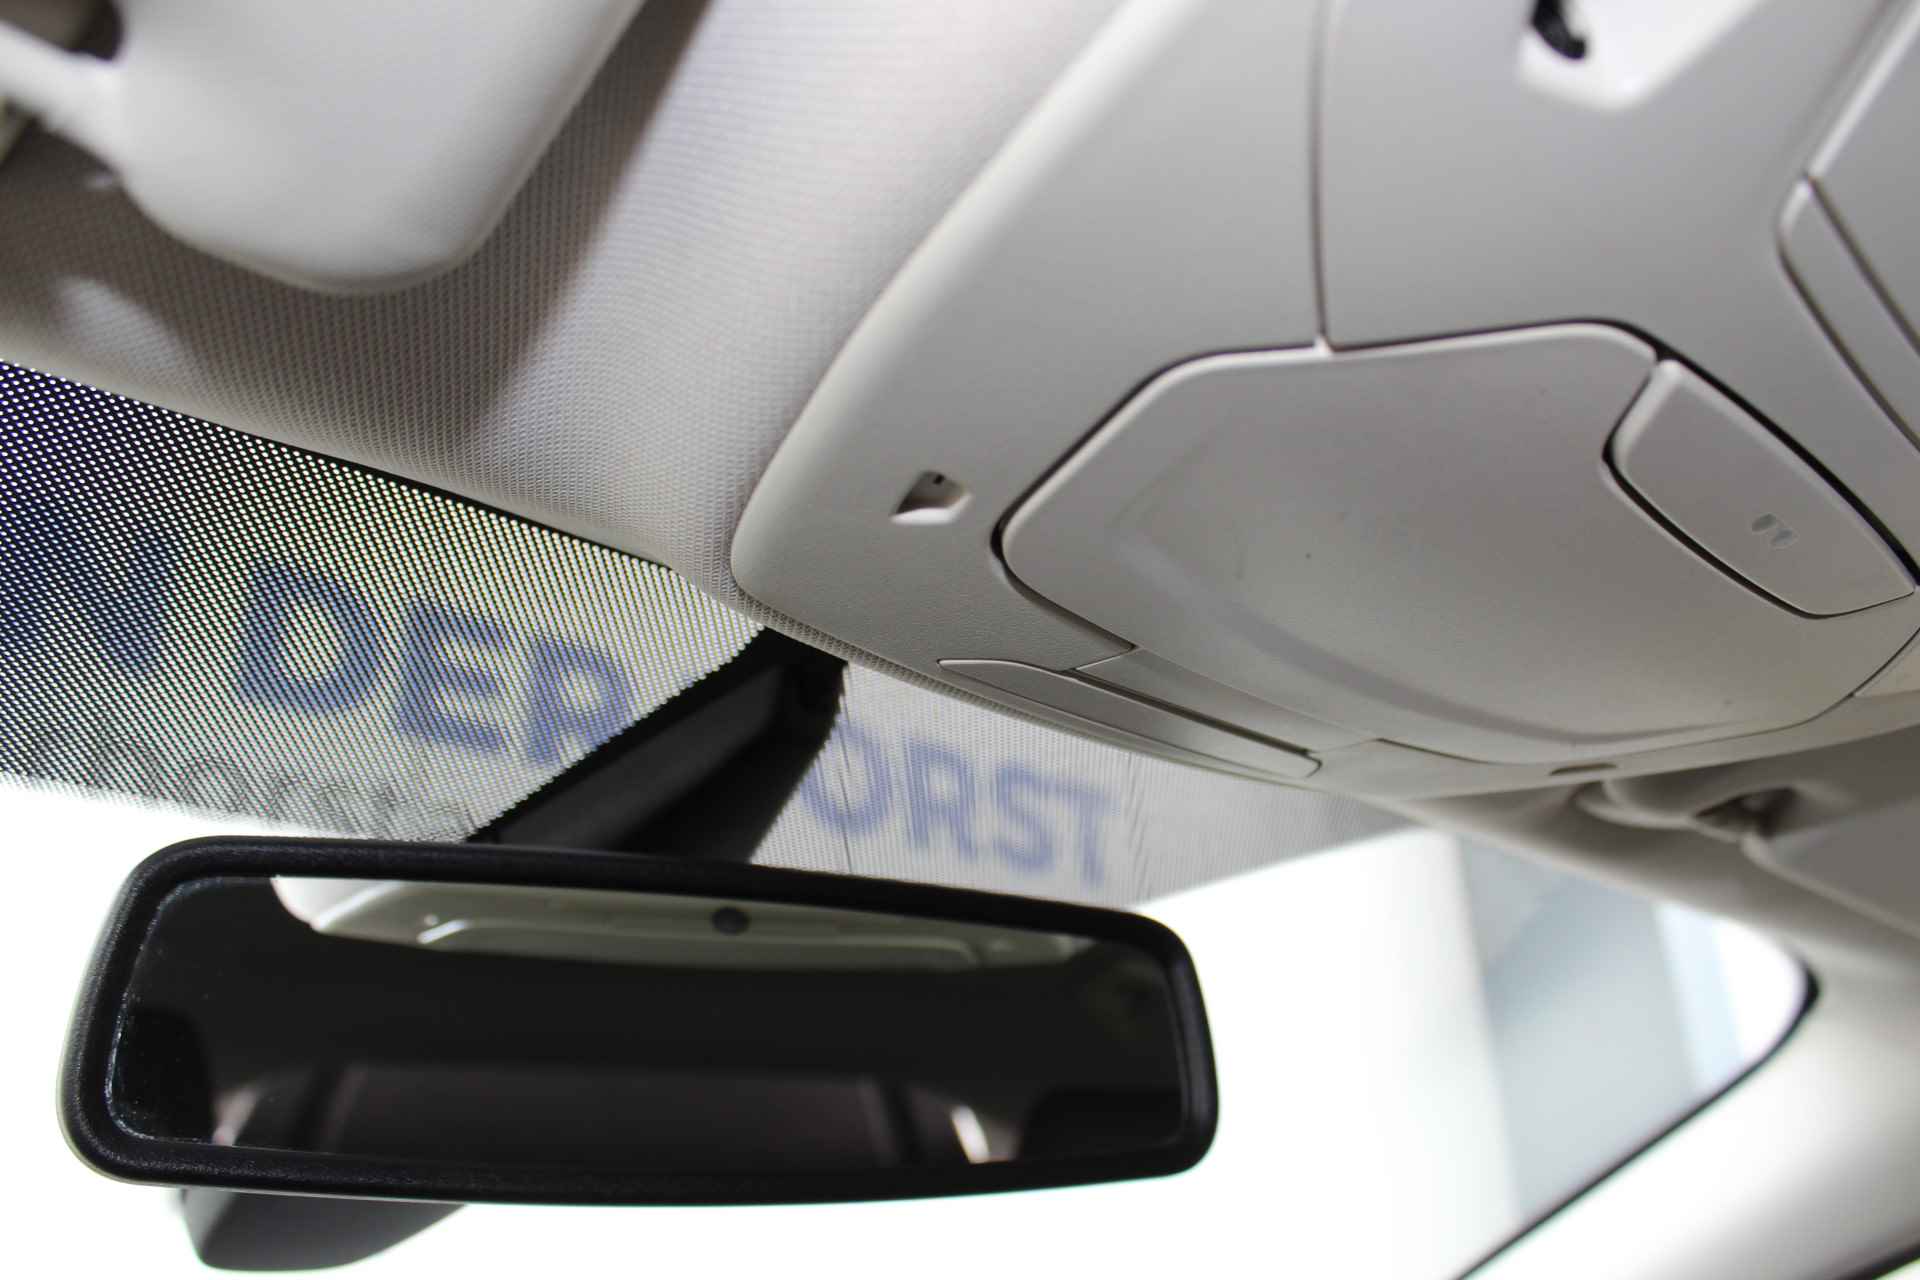 Ford Focus 1.0-125pk Titanium. Fijn rijdende en goed onderhouden Ford Focus hatchback. Volautm. airco dual, cruise control, multifunctioneel stuurwiel, boordcomputer, navigatie, telefoonvoorb., metallic lak, LM wielen, elektr. ramen en spiegels etc. - 22/38